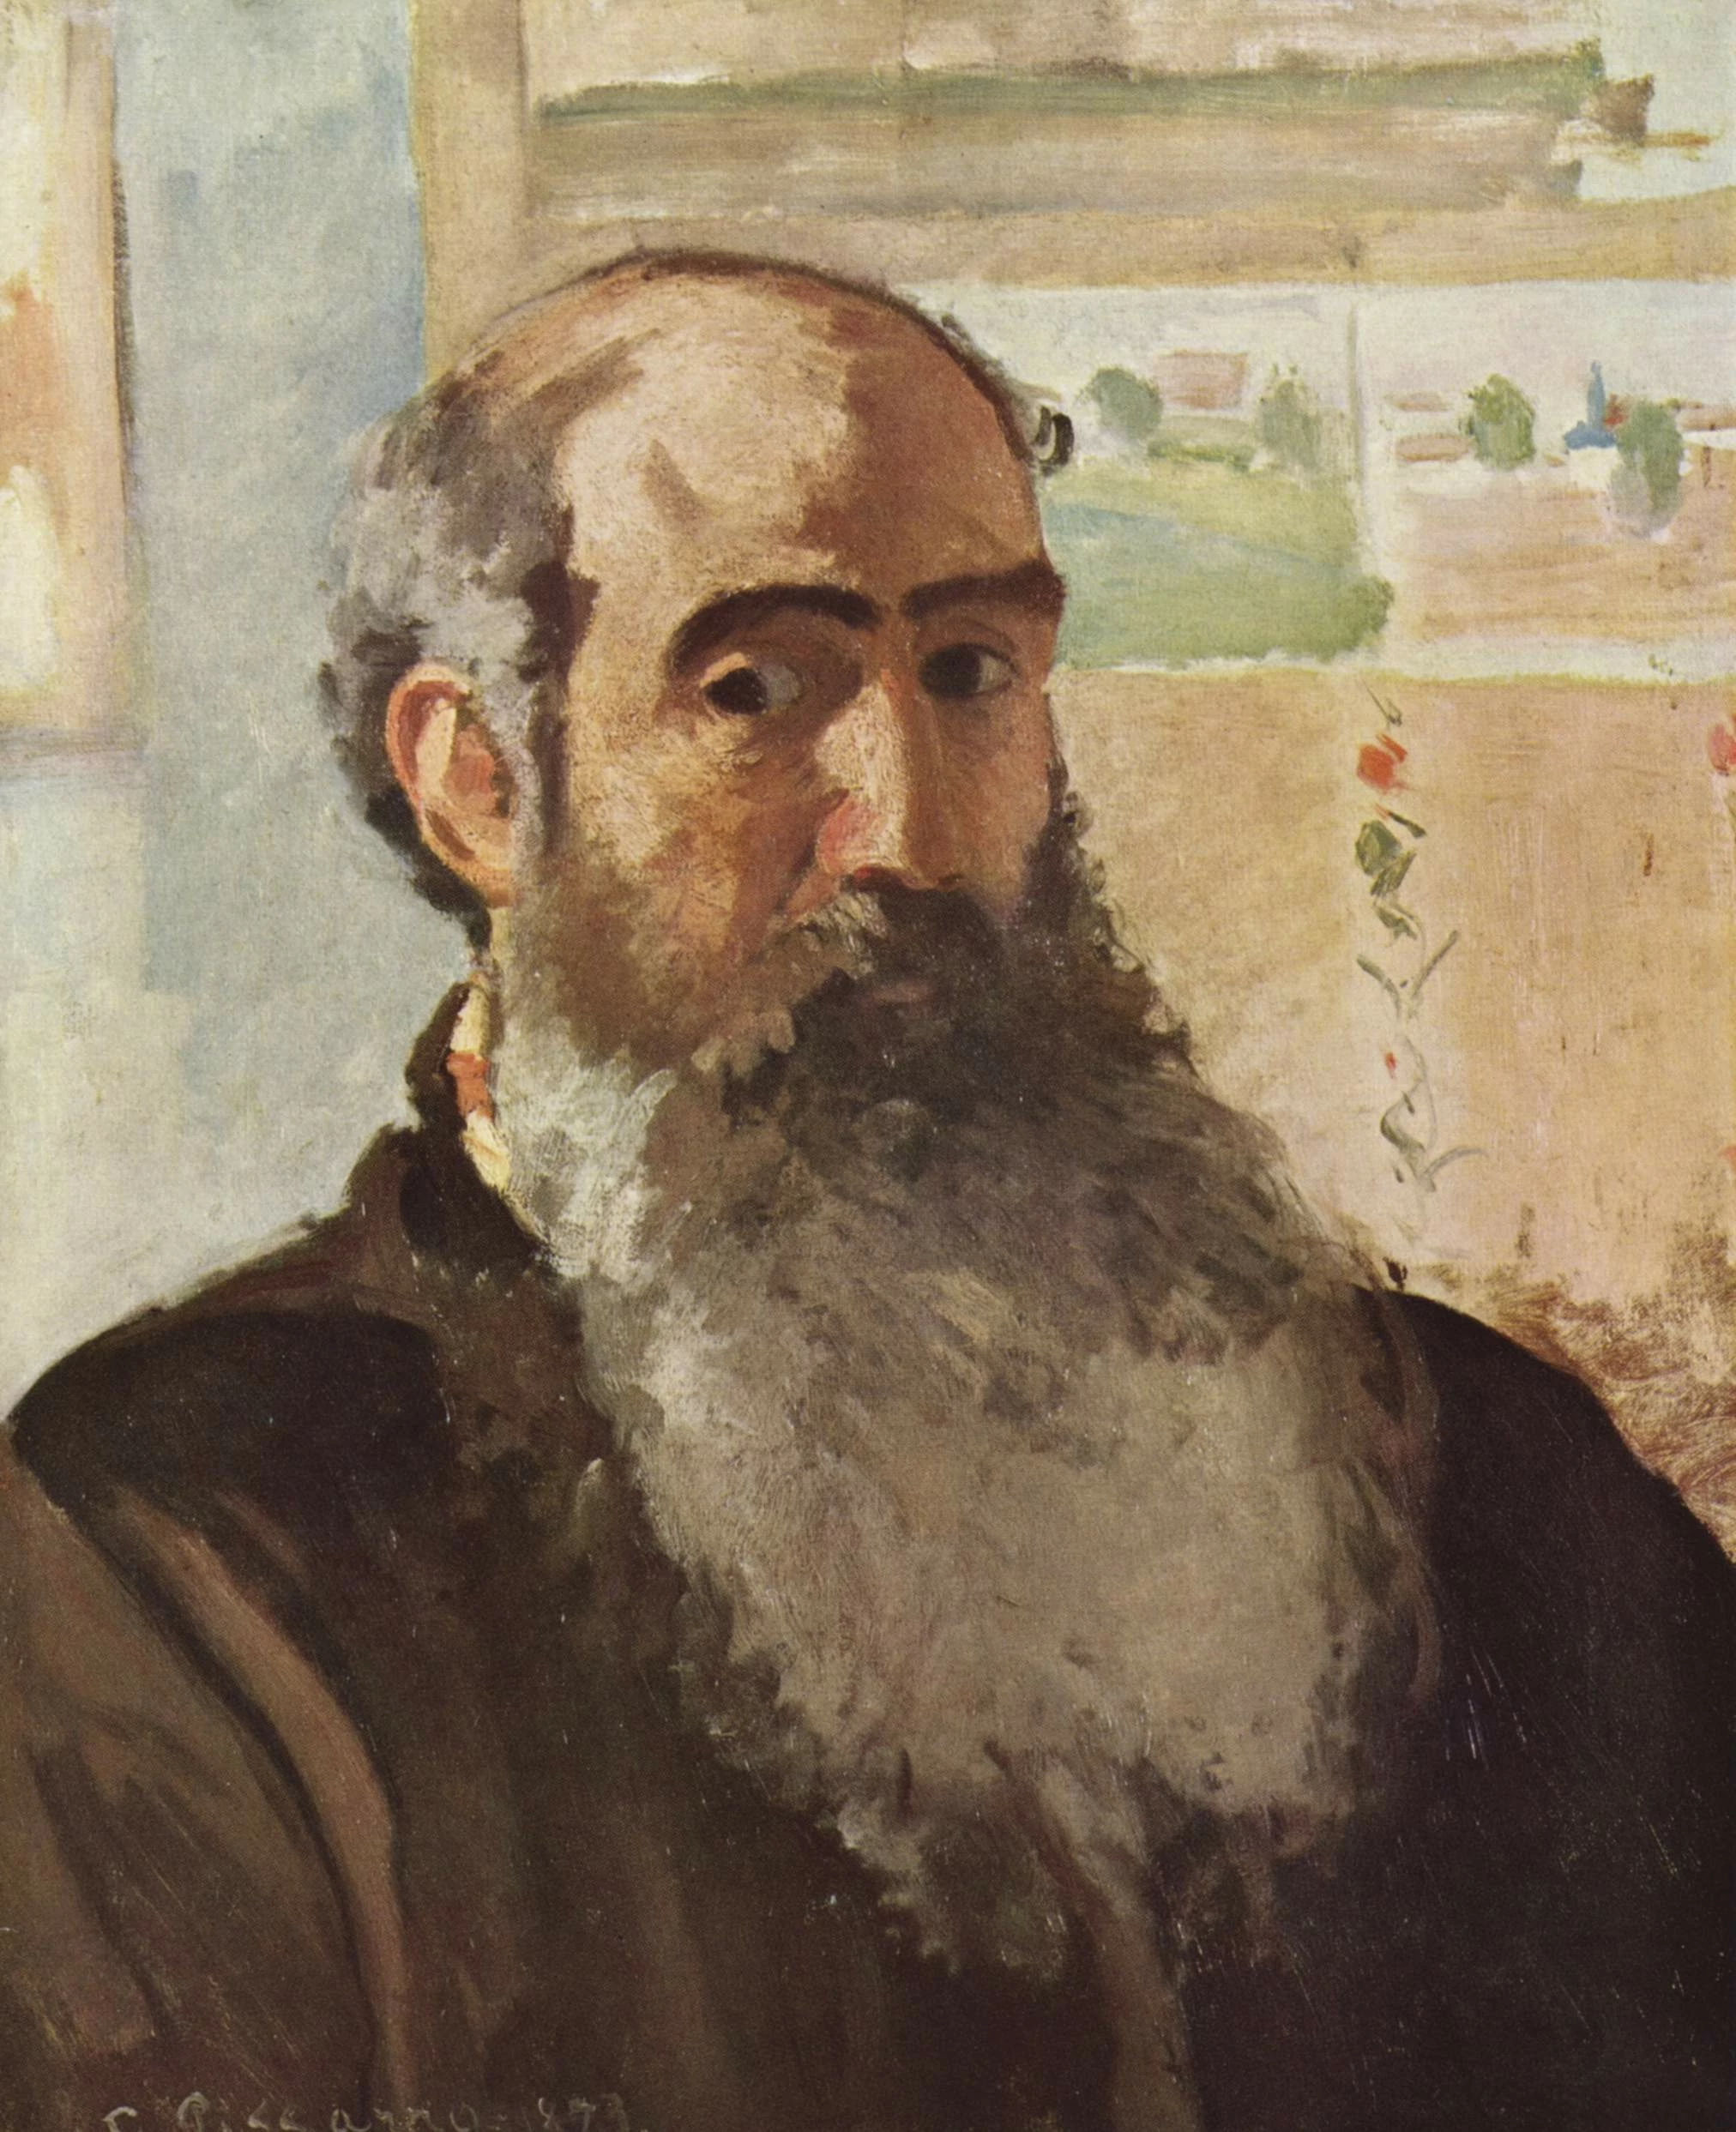 Self-portrait, Camille Pissarro